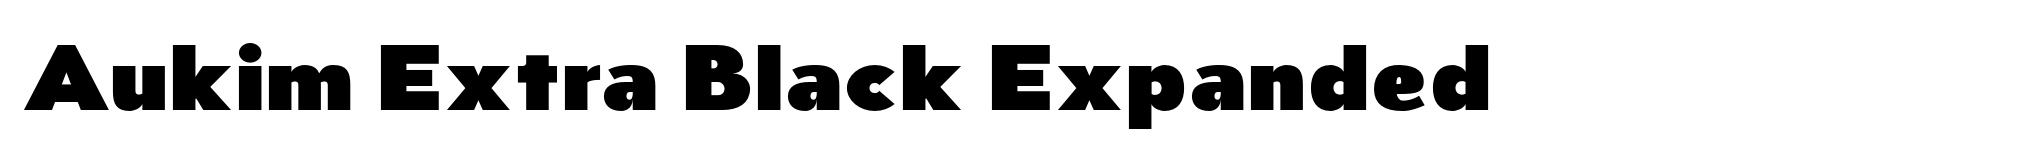 Aukim Extra Black Expanded image